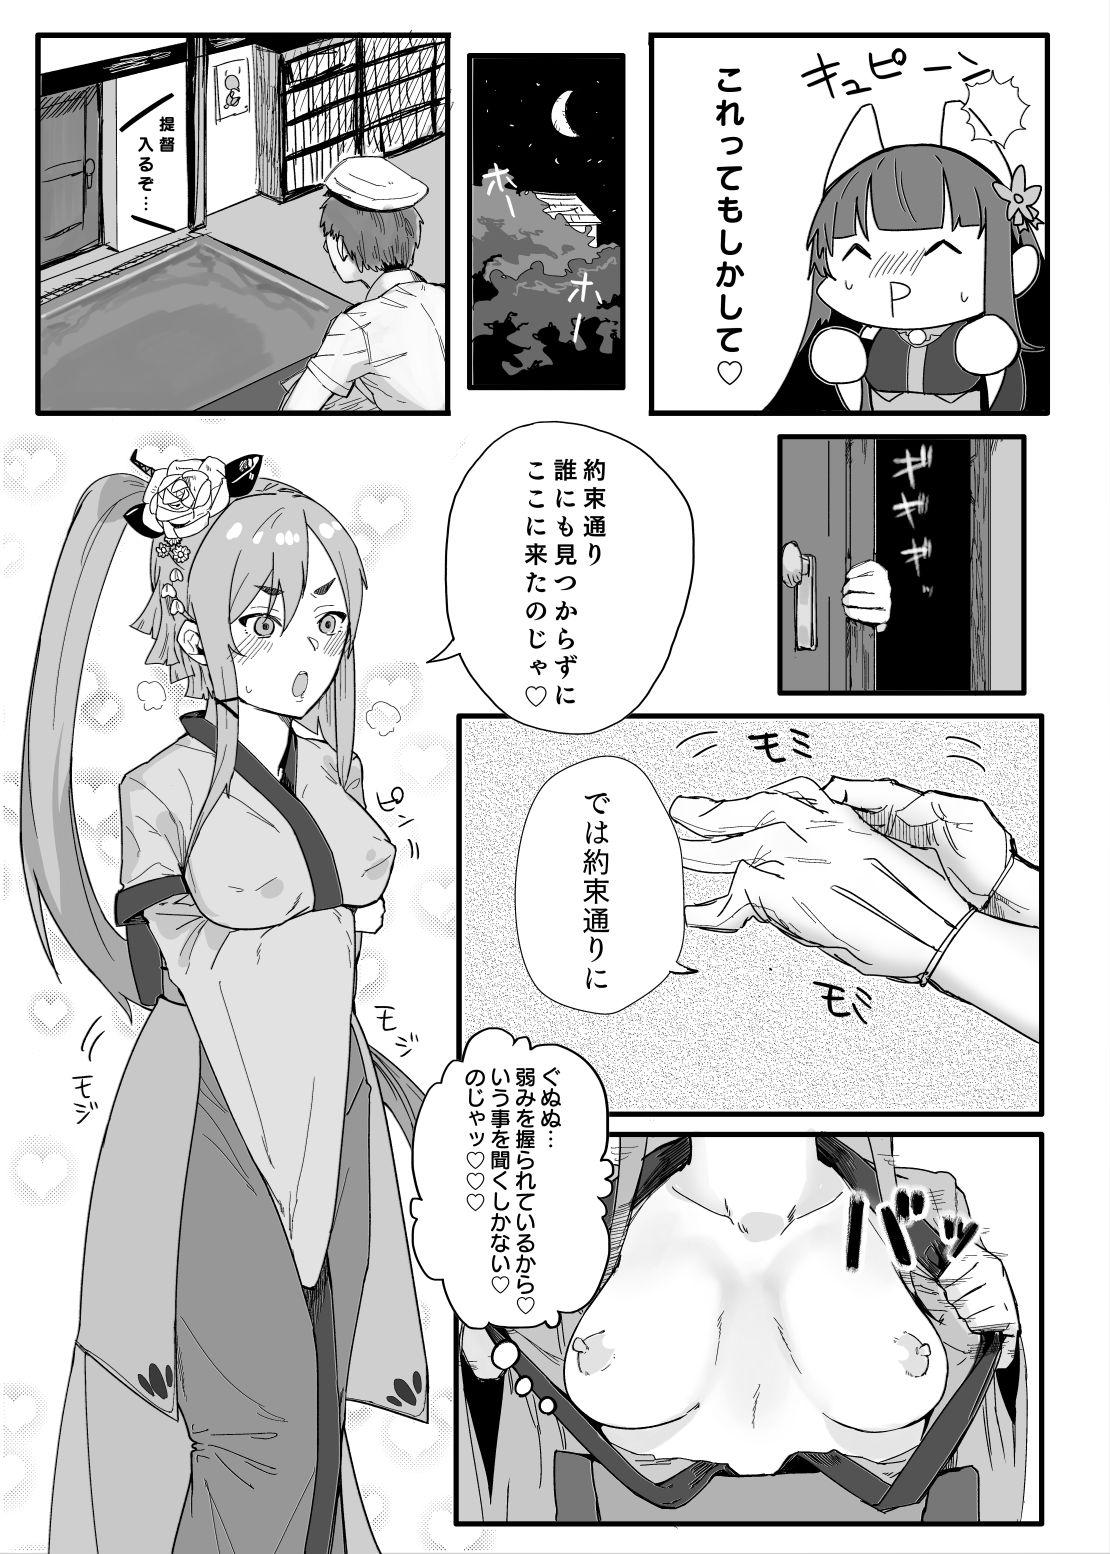 Handjobs Akagi-san wa Sore o Gaman dekinai - Warship girls China - Page 7